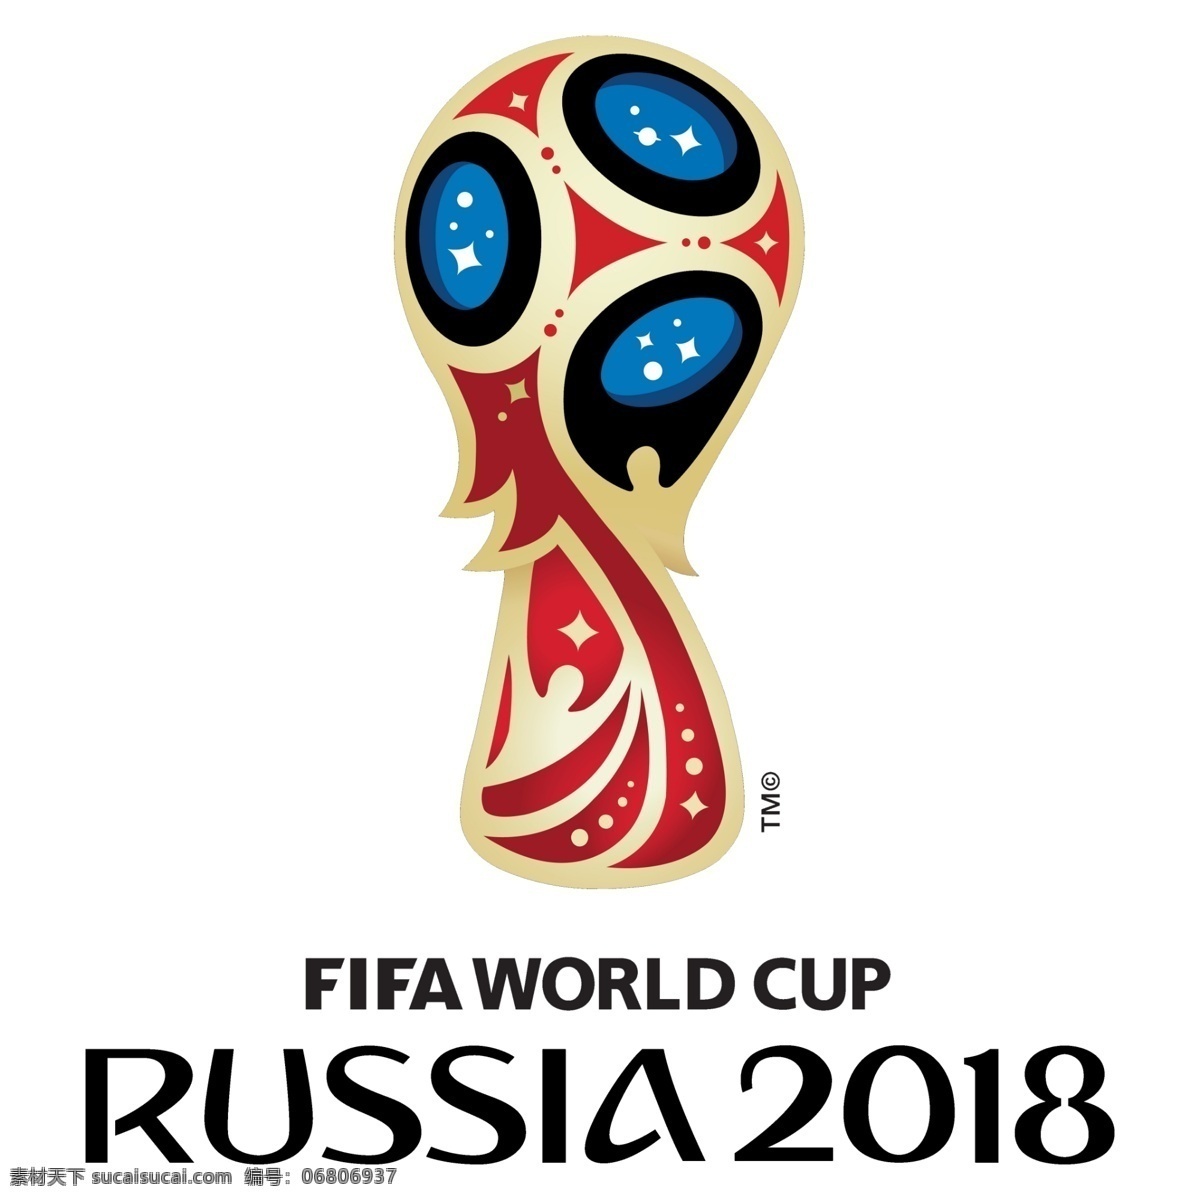 2018 俄罗斯 世界杯 logo logo标志 俄罗斯世界杯 world cup 文化艺术 体育运动